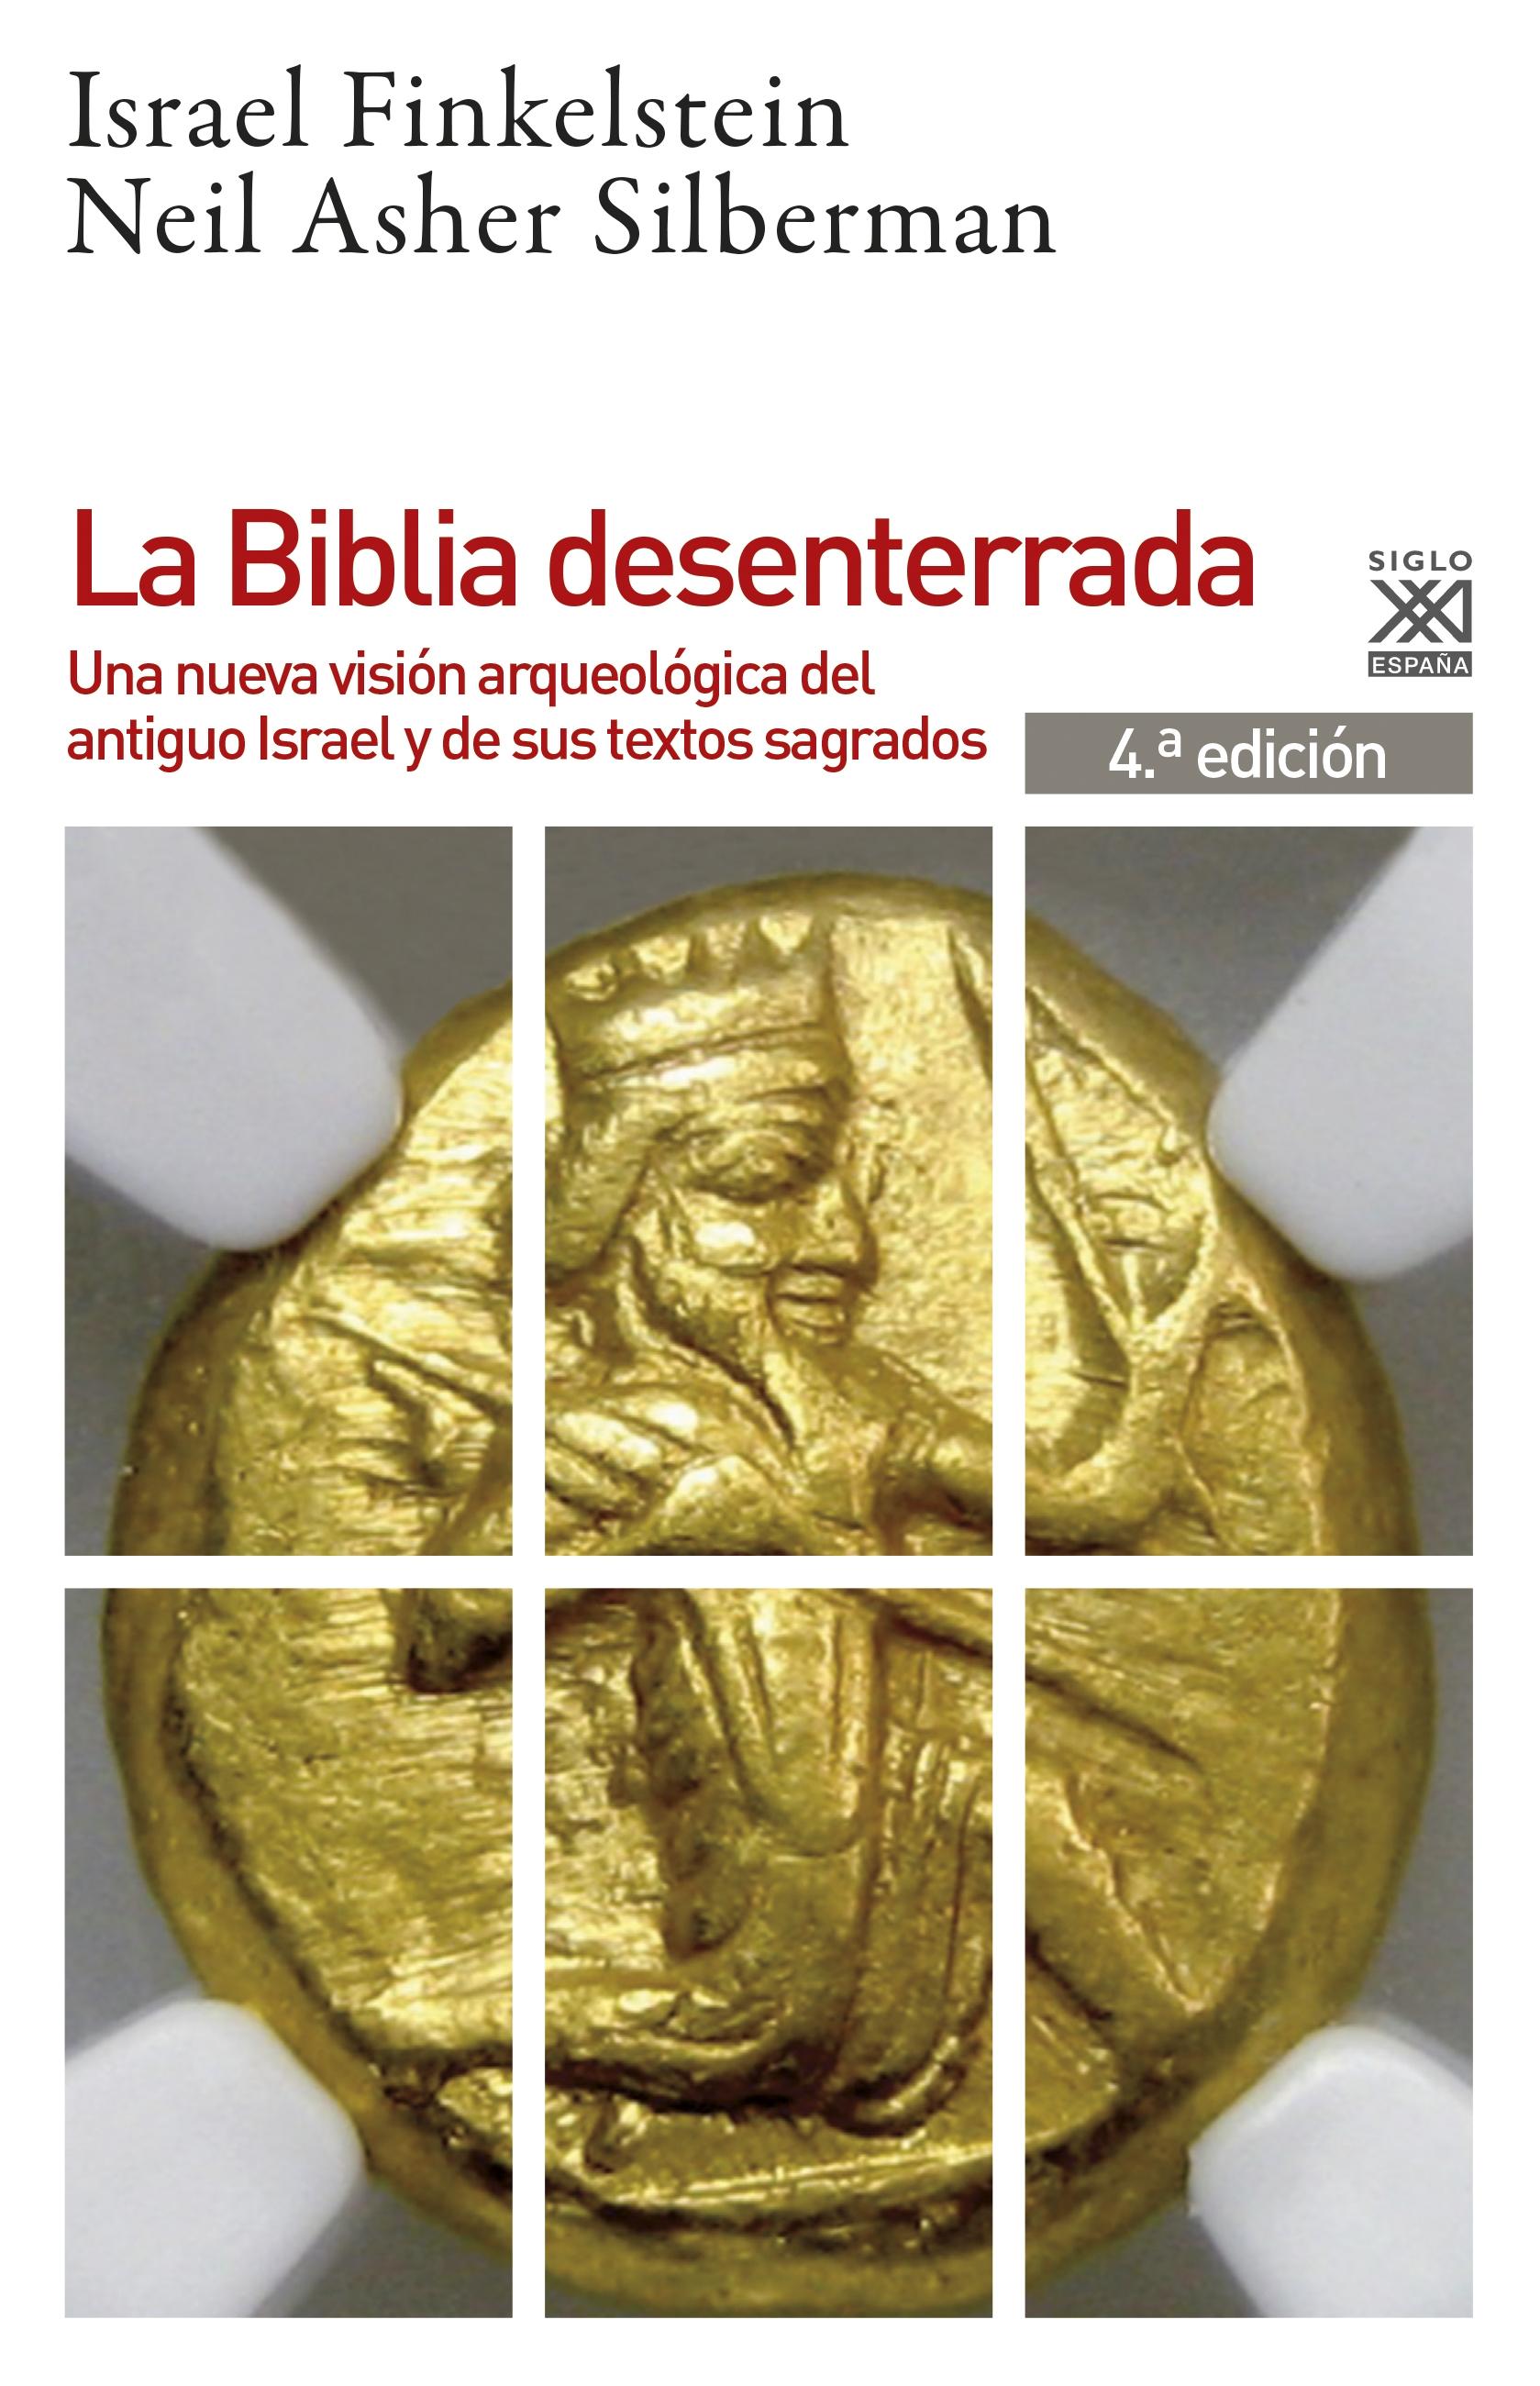 La Biblia desenterrada "Una nueva visión arqueológica del antiguo Israel y de los orígenes de sus textos sagrados"